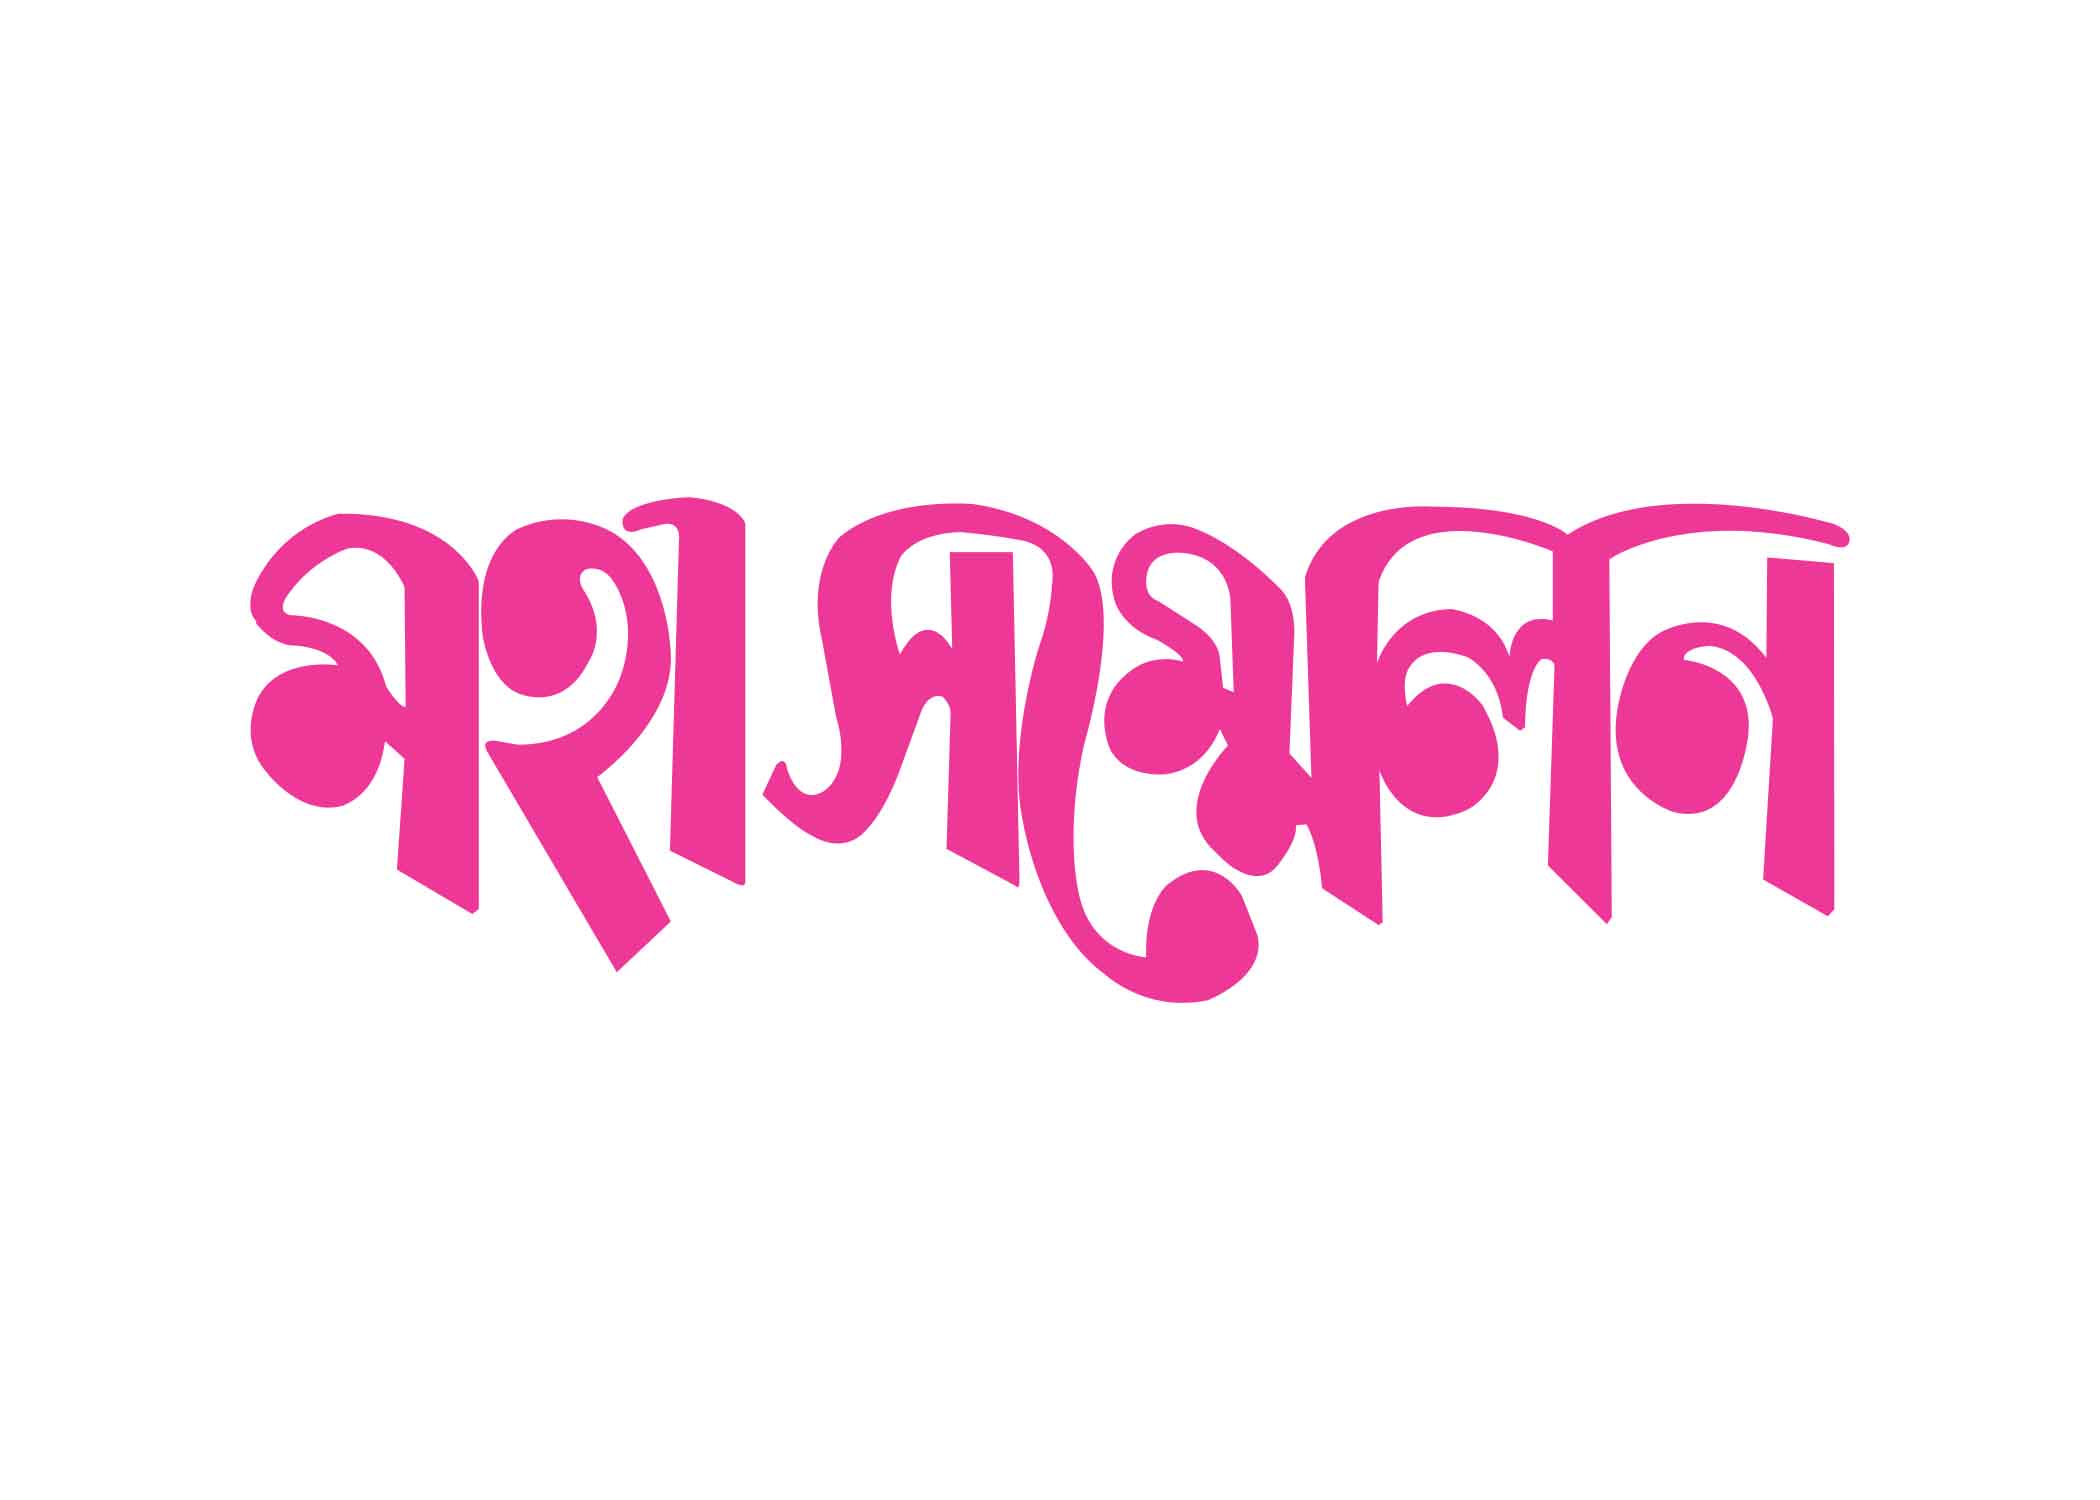 মহা সম্মেলন টাইপোগ্রাফি । Bangla Typhography PNG